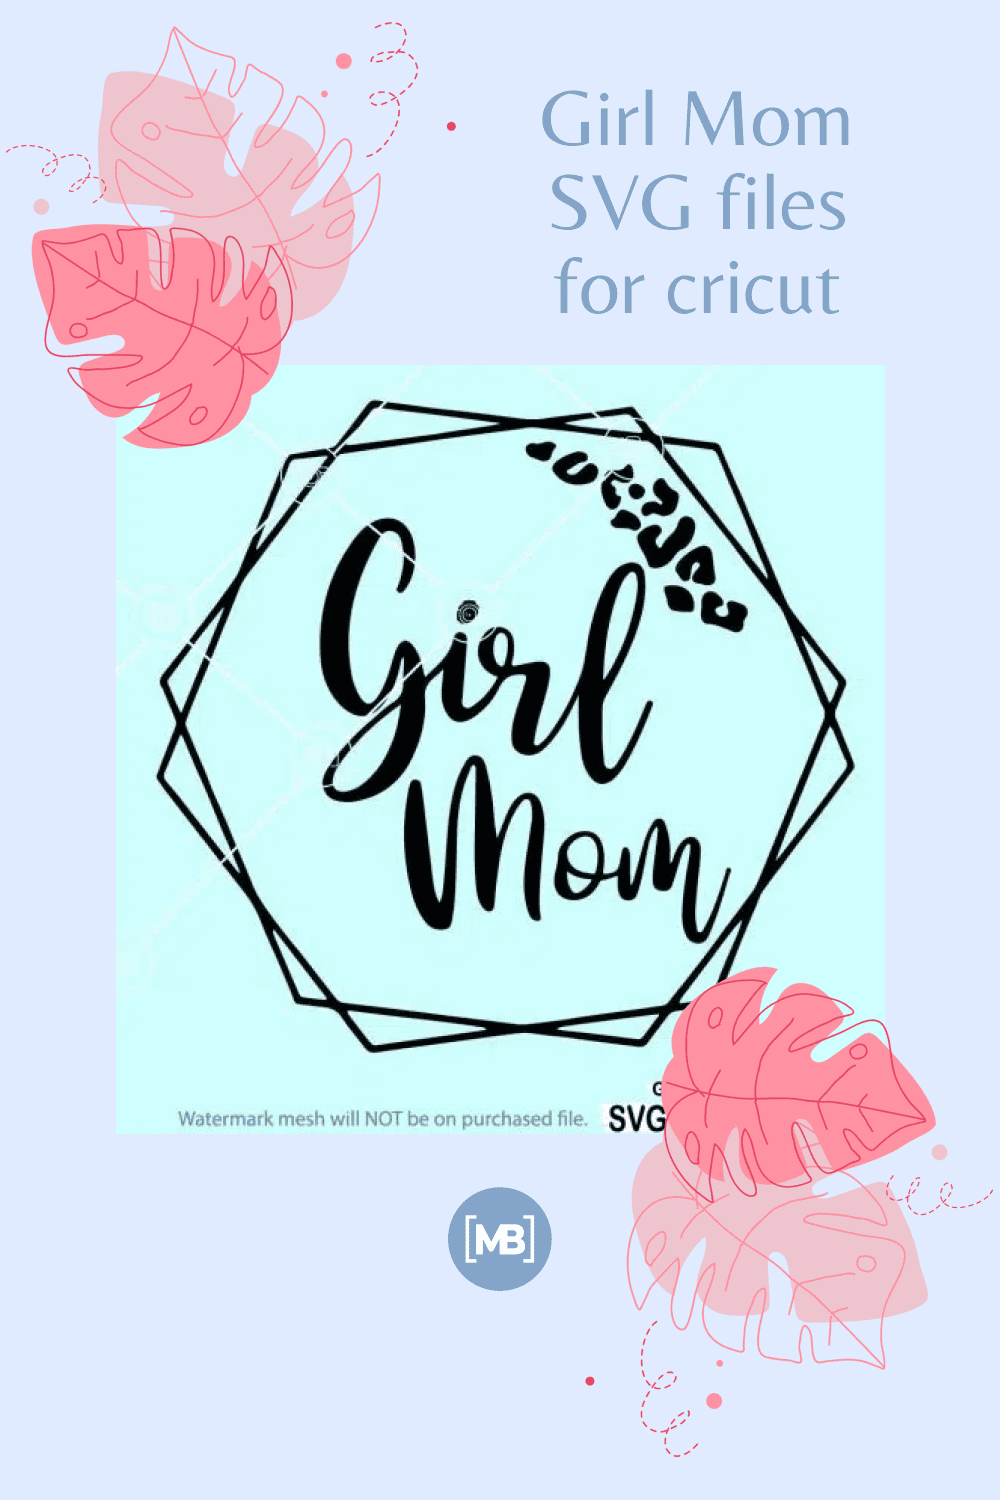 Girl Mom SVG files for cricut.